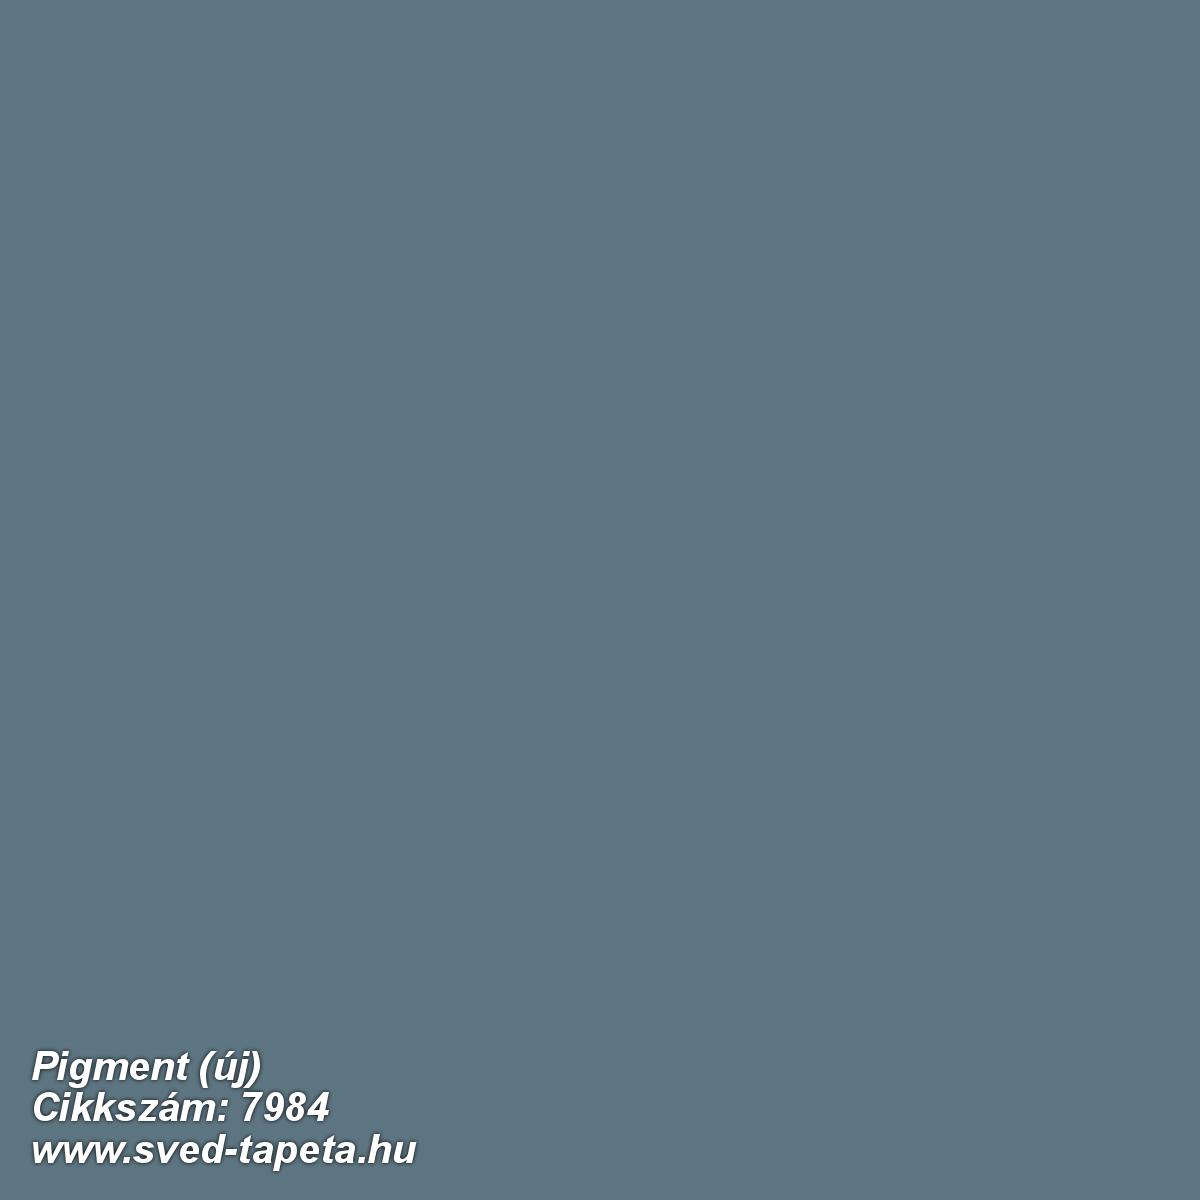 Pigment (új) 7984 cikkszámú svéd Borasgyártmányú designtapéta